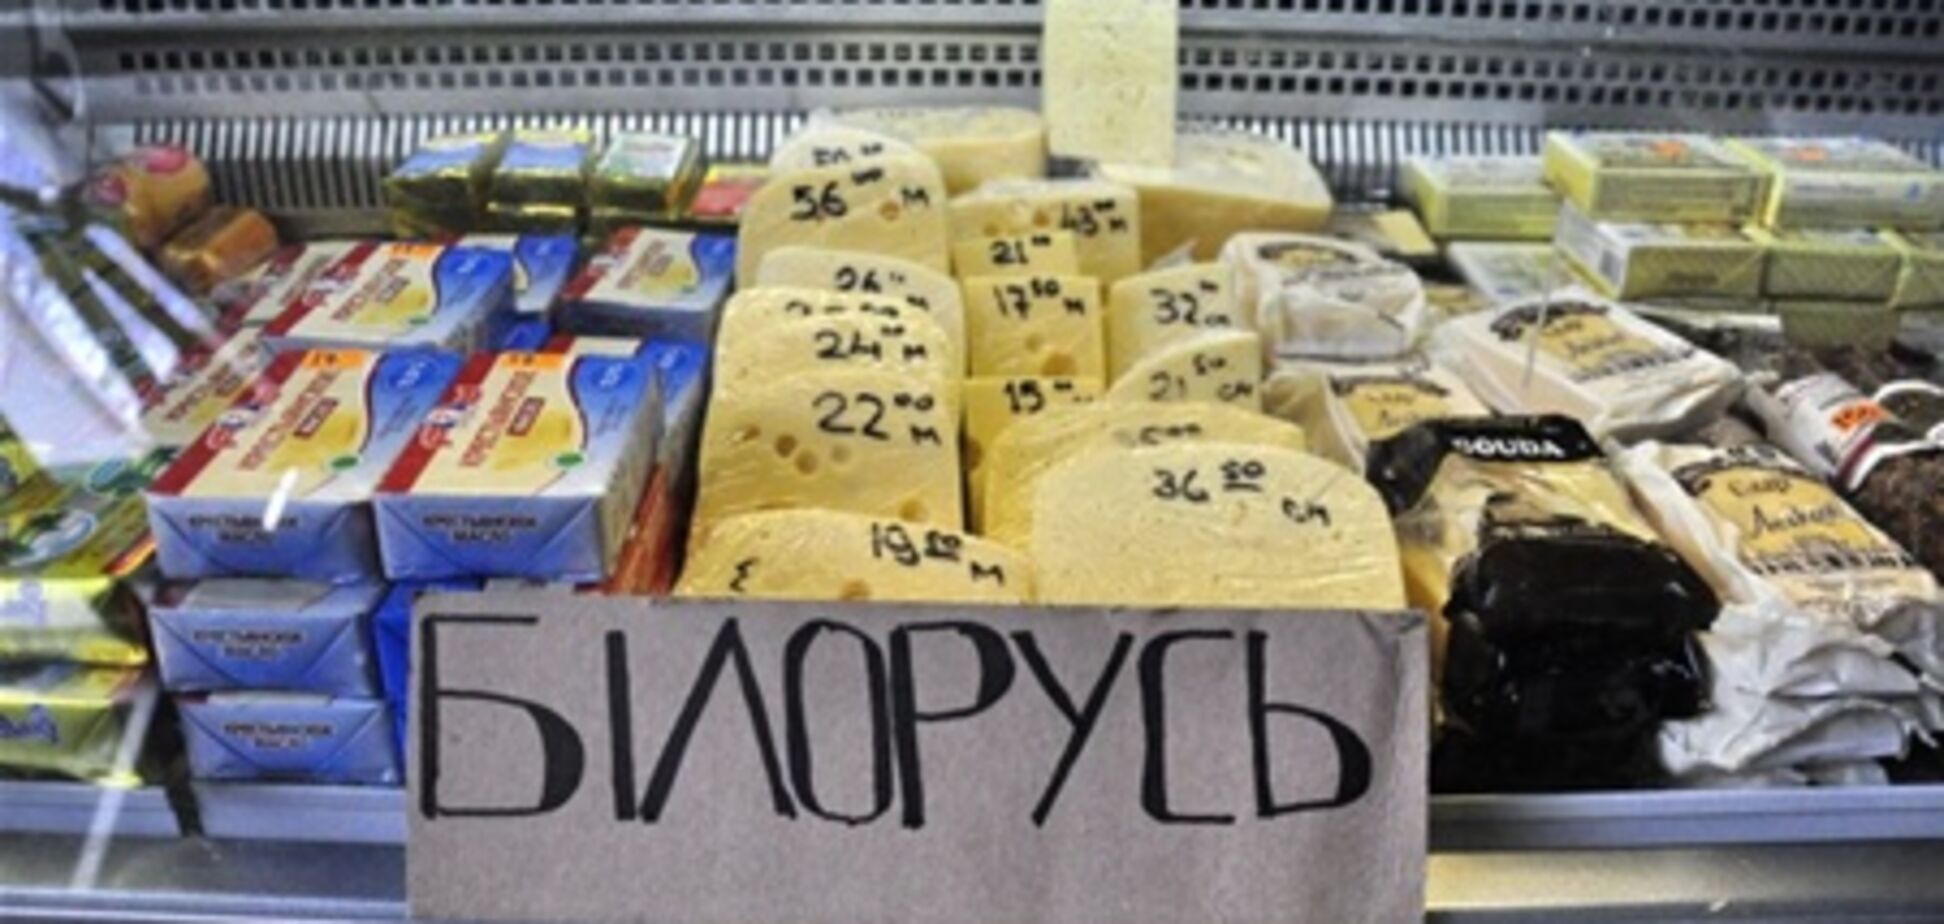 Продукты из Белоруссии продают в Украине незаконно